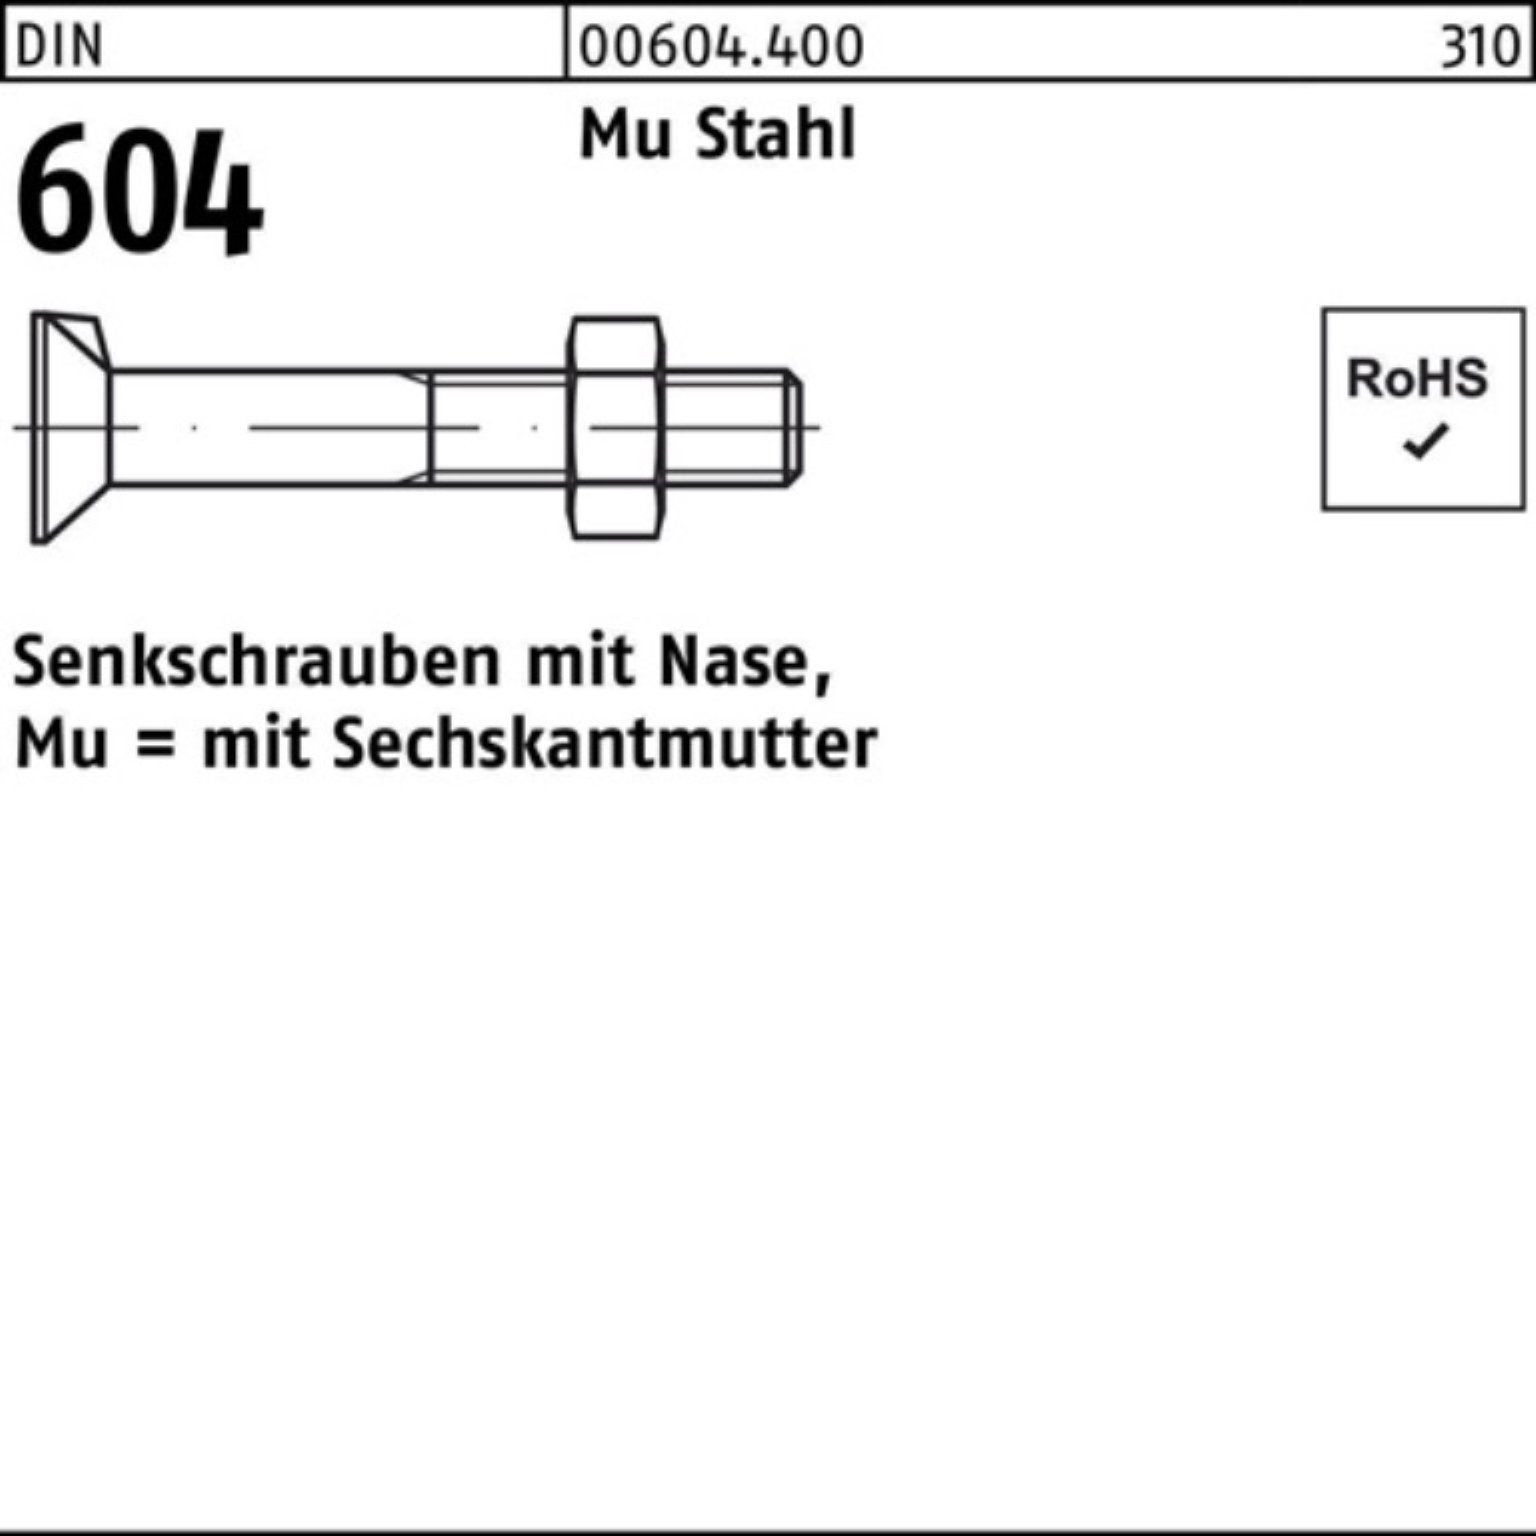 Reyher Senkschraube 100er Pack Senkschraube DIN 604 Nase/6-ktmutter M16x 90 Mu Stahl 4.6 2